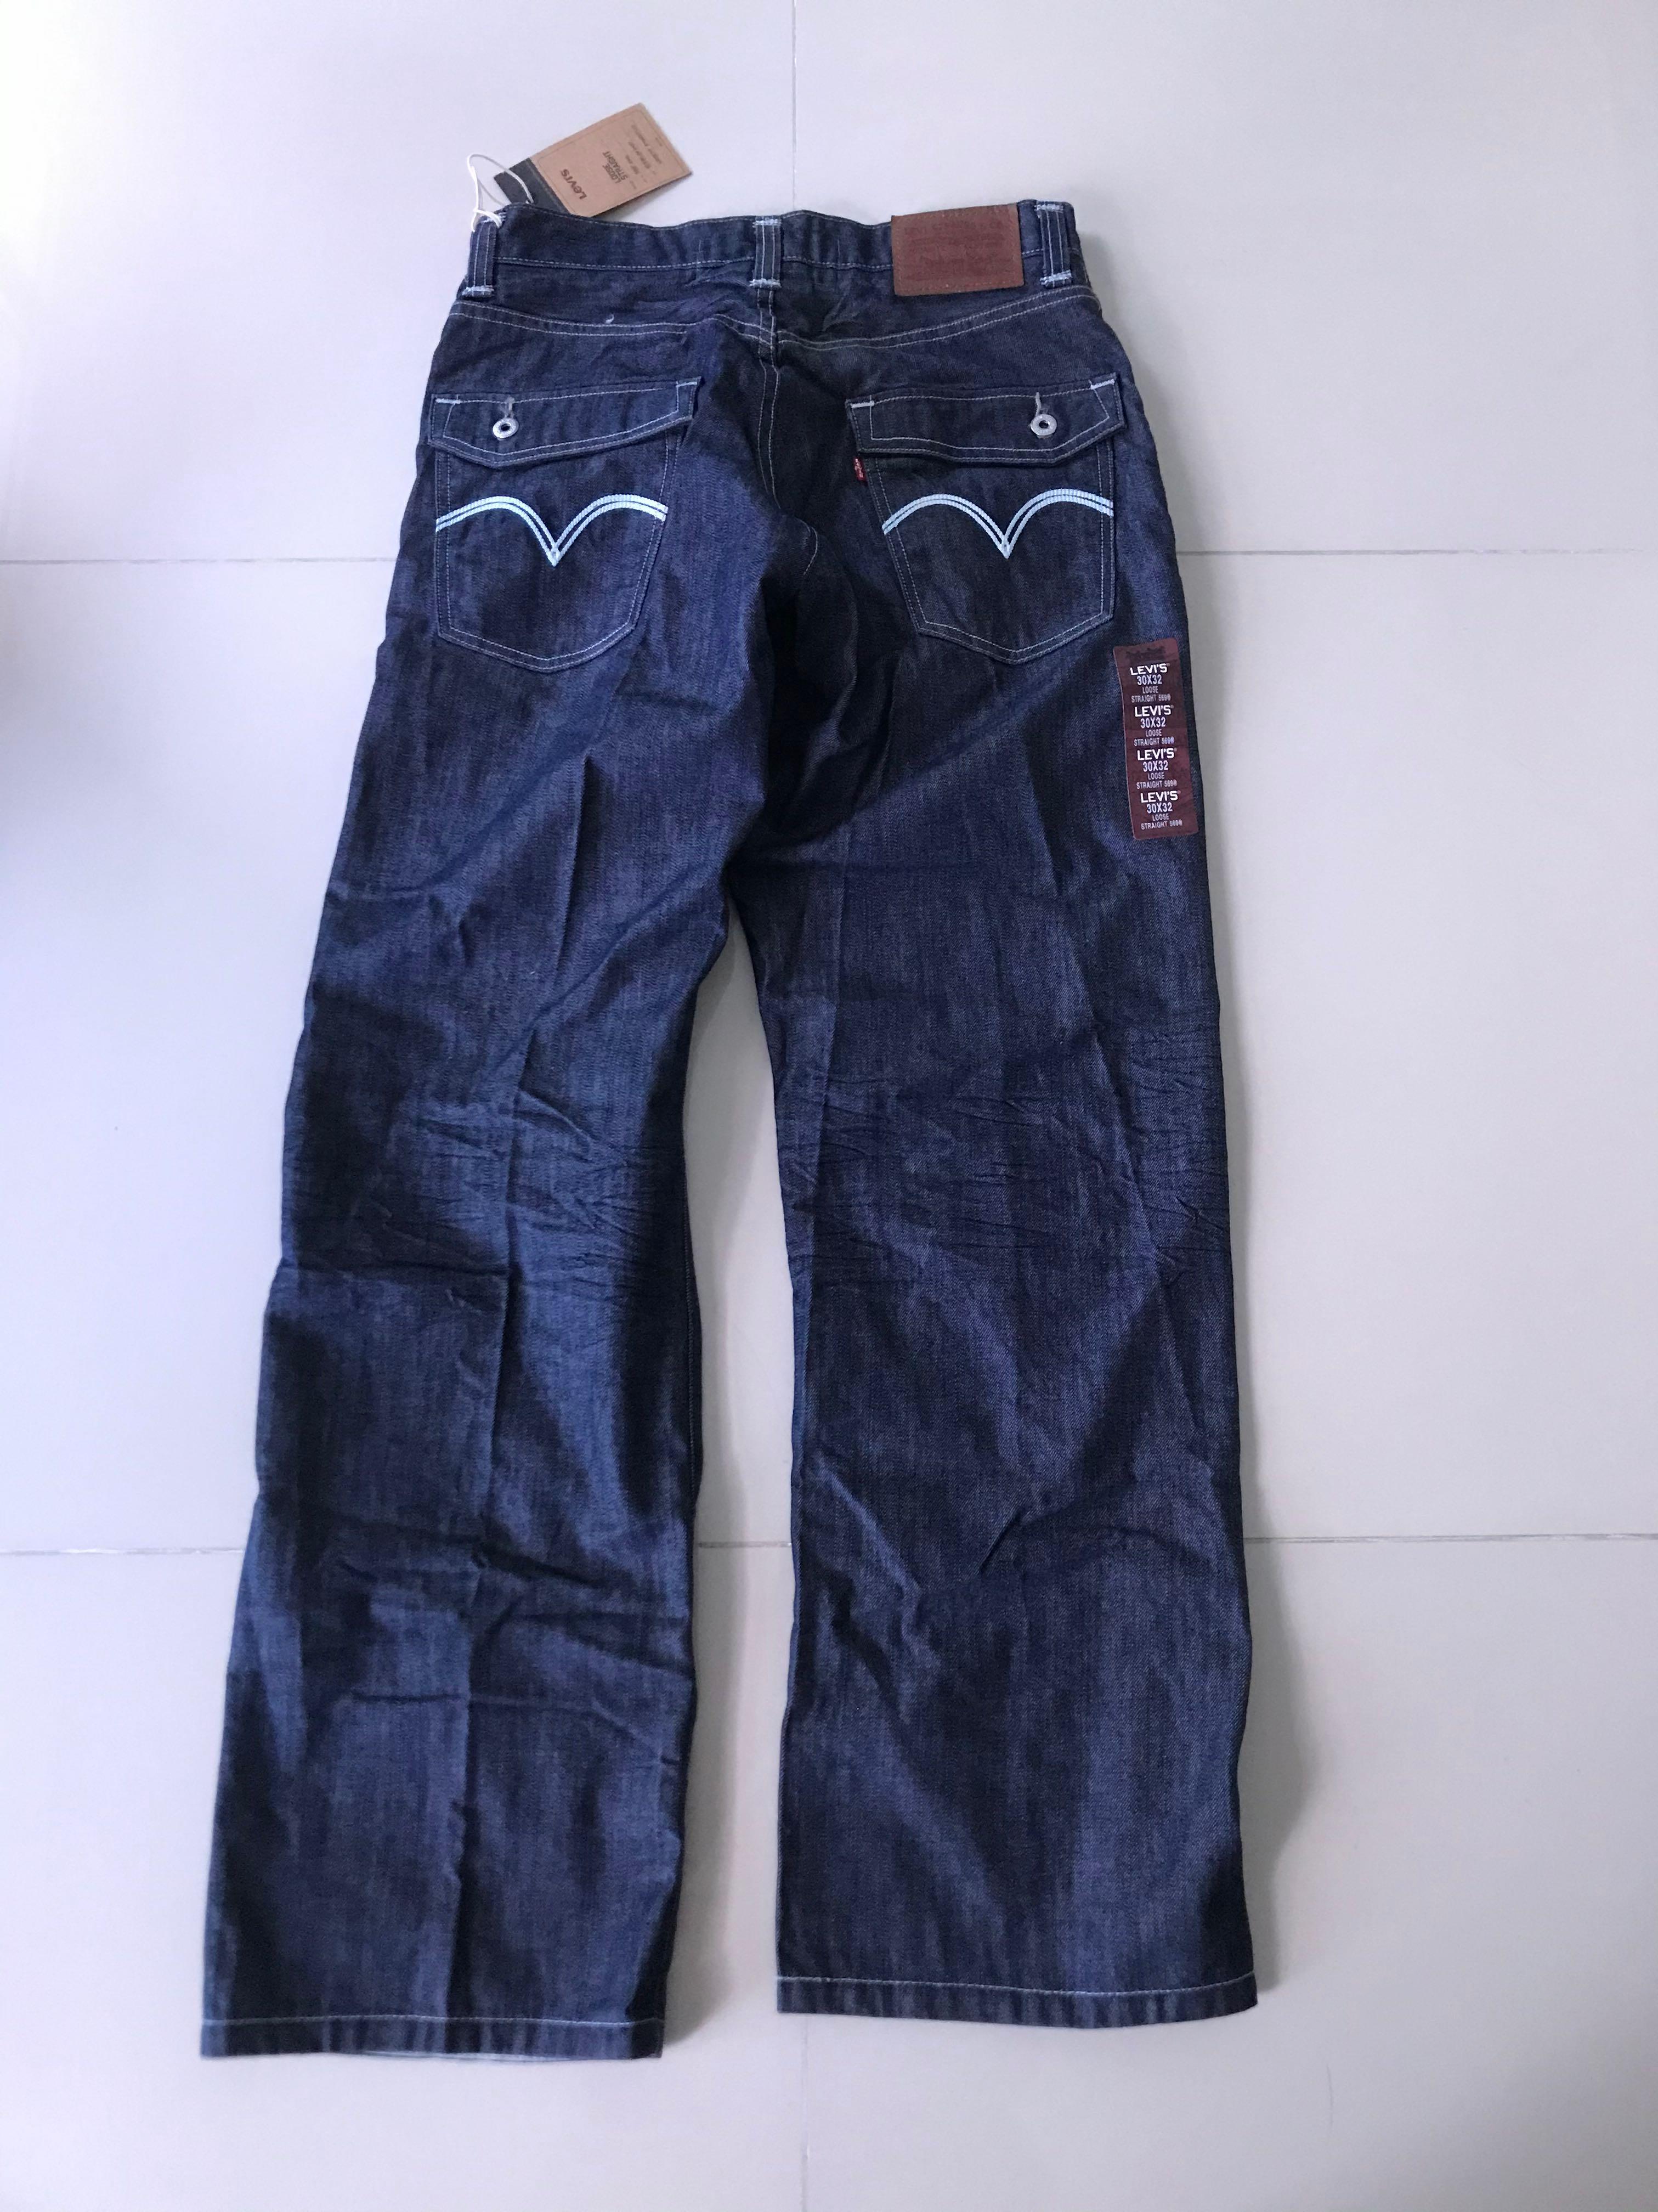 levis 569 jeans cheap